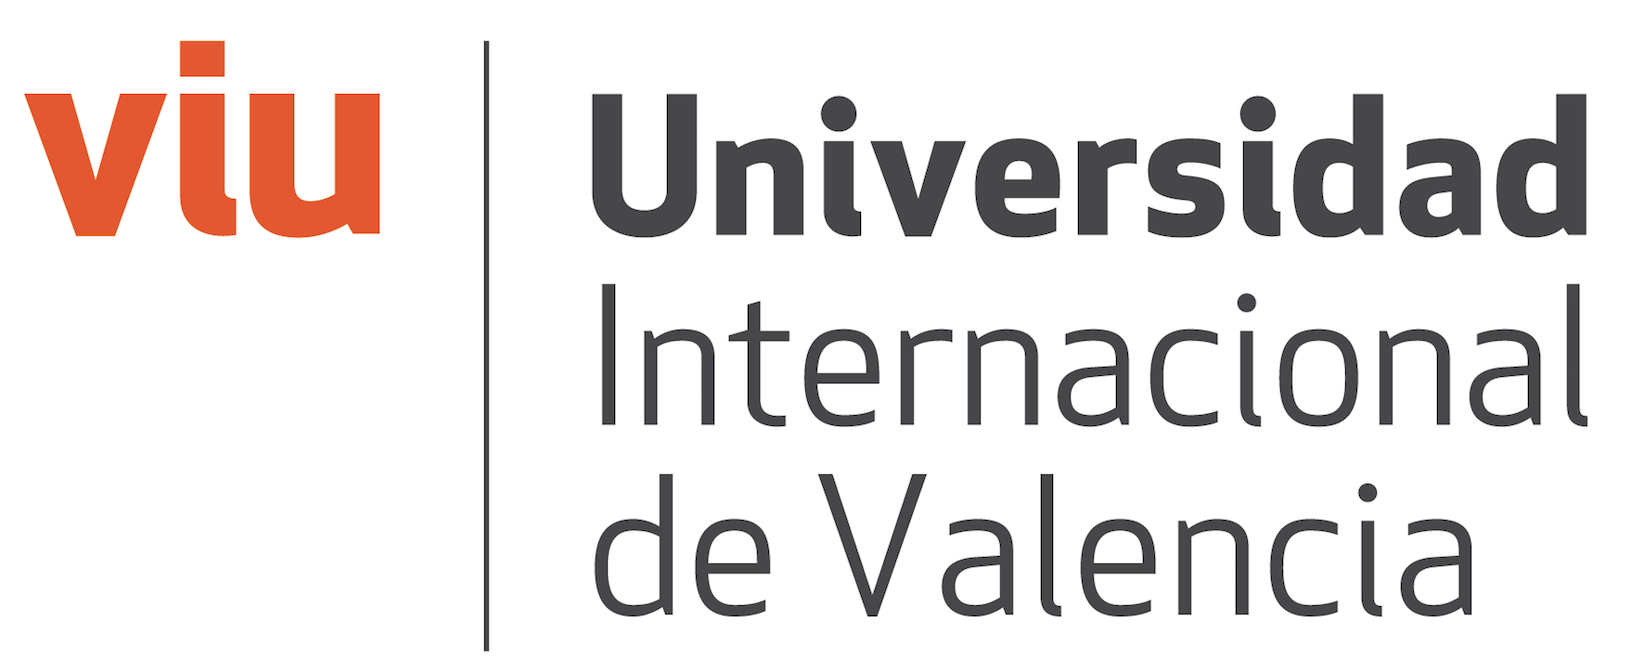 Universidad de valencia 